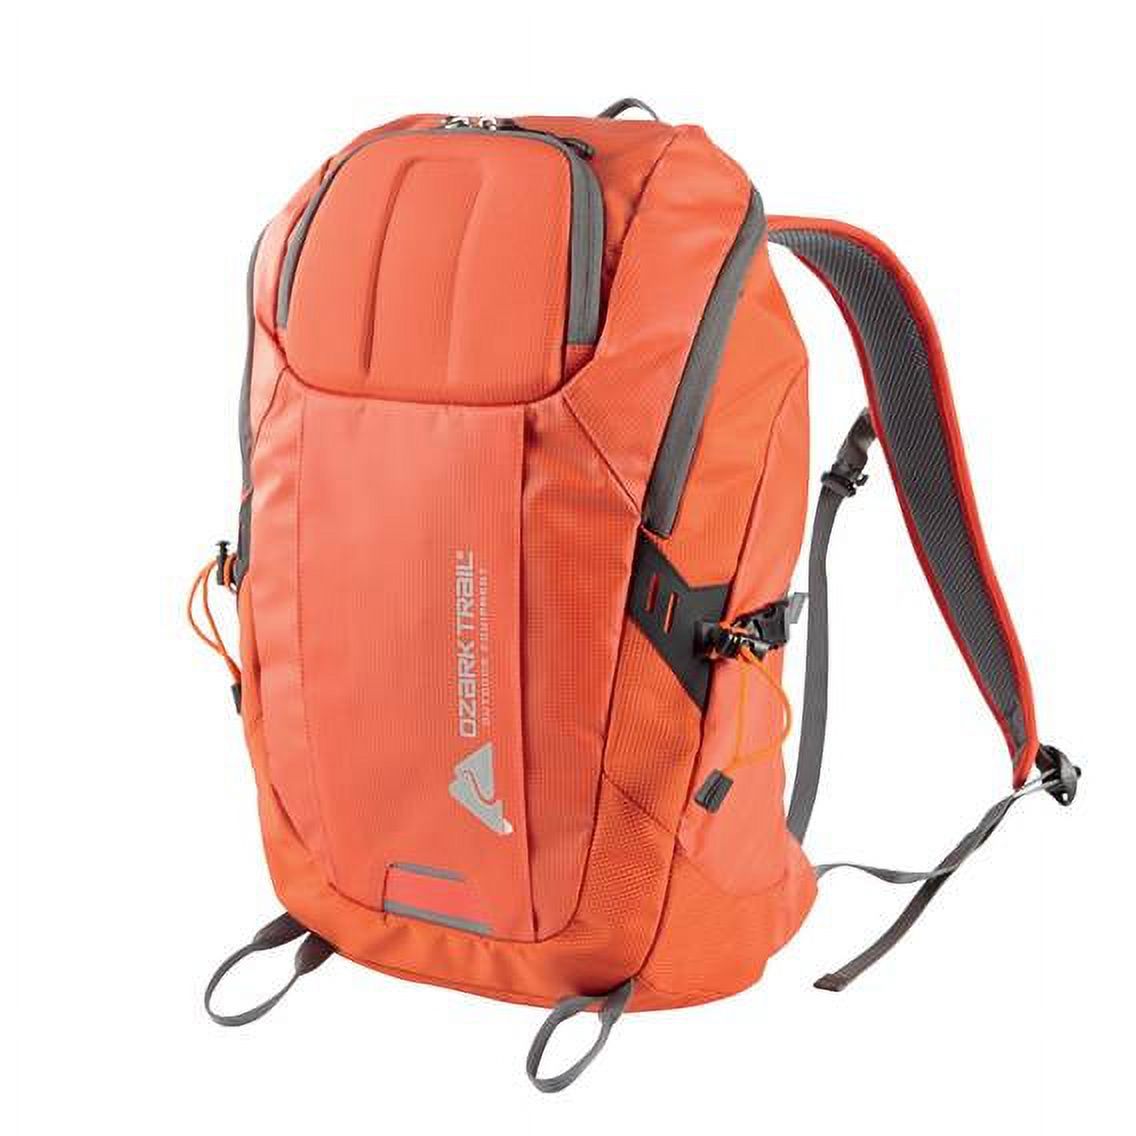 Ozark Trail 35 ltr Backpacking Backpack, Orange - image 1 of 5